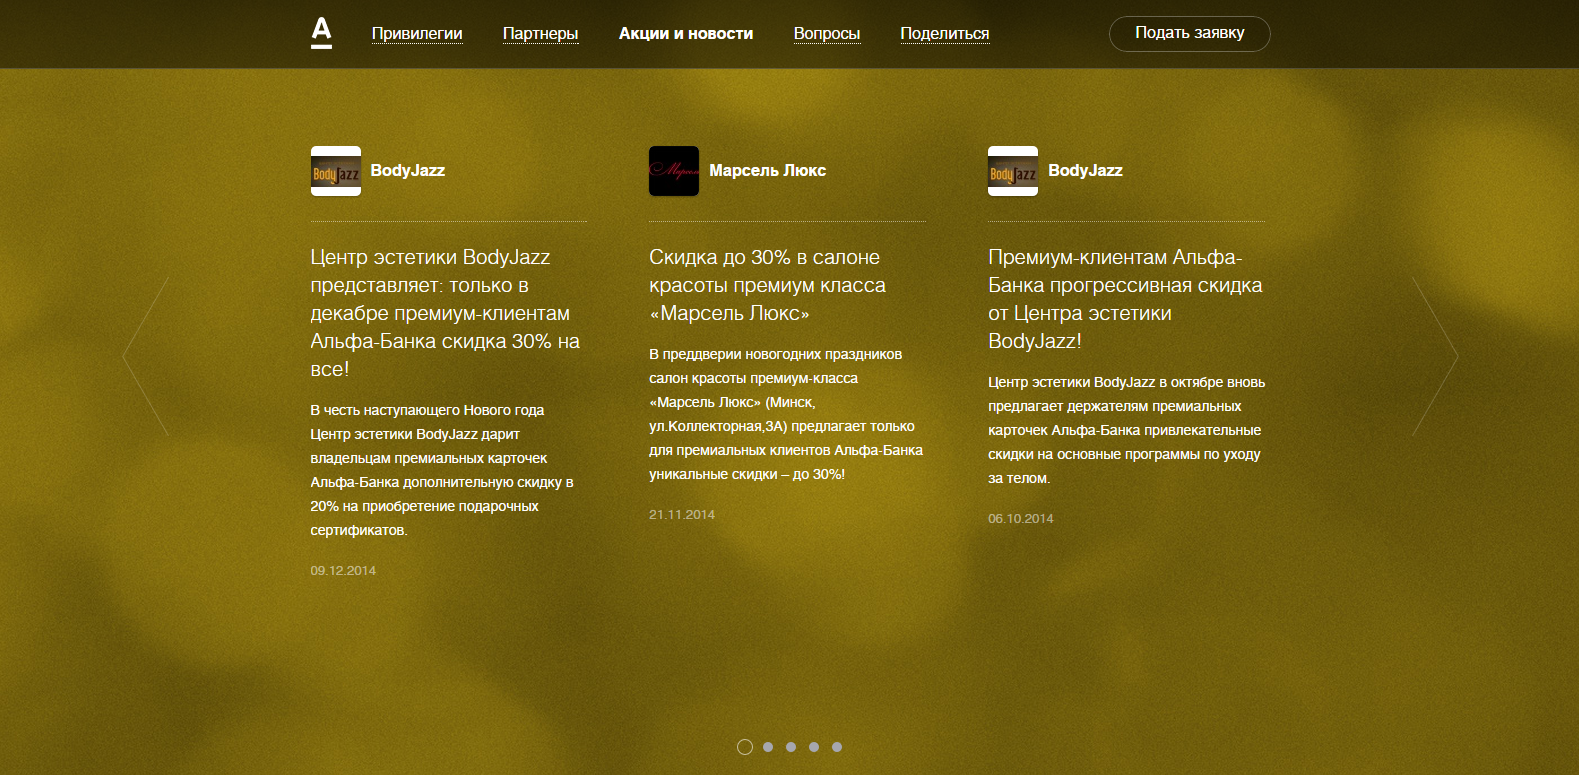 сайт премиальной программы golden alfa - банковские услуги - goldenalfa.by